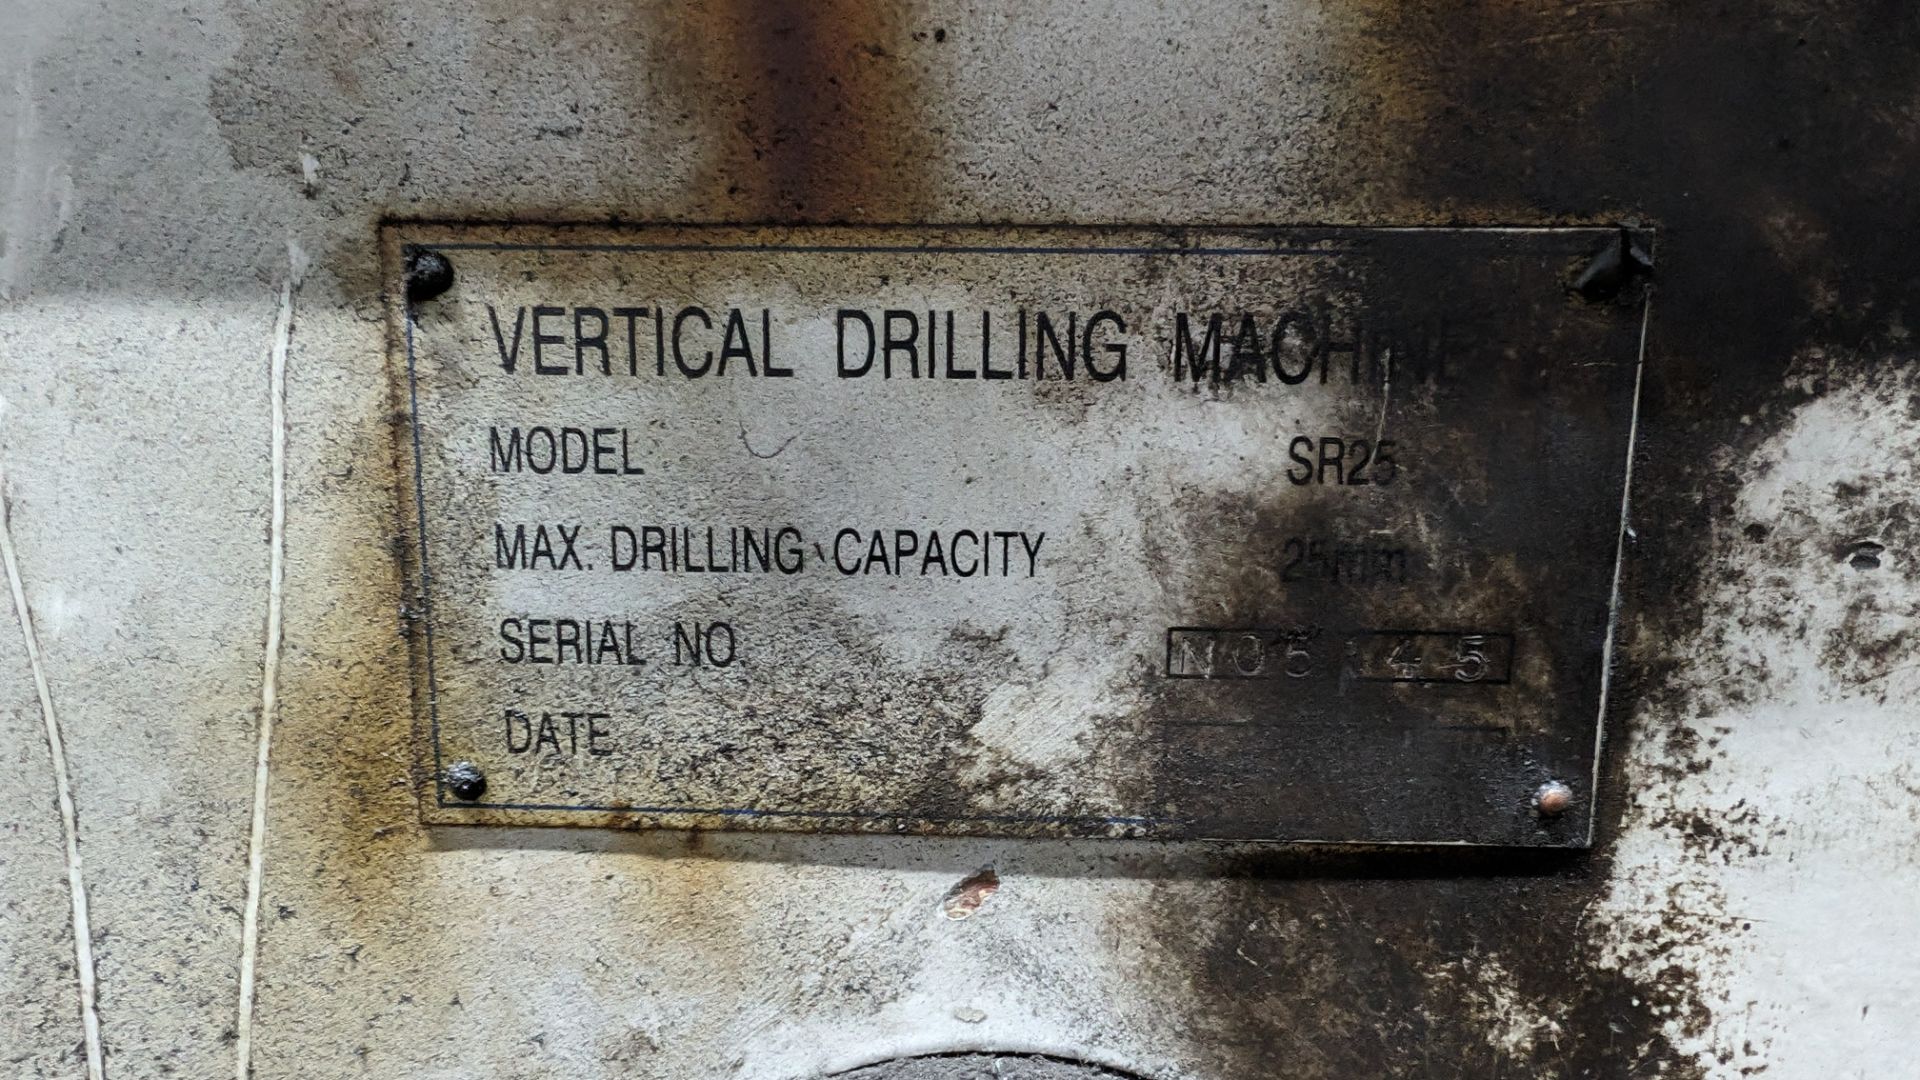 Meyer model SR25 vertical drilling machine - Image 10 of 11